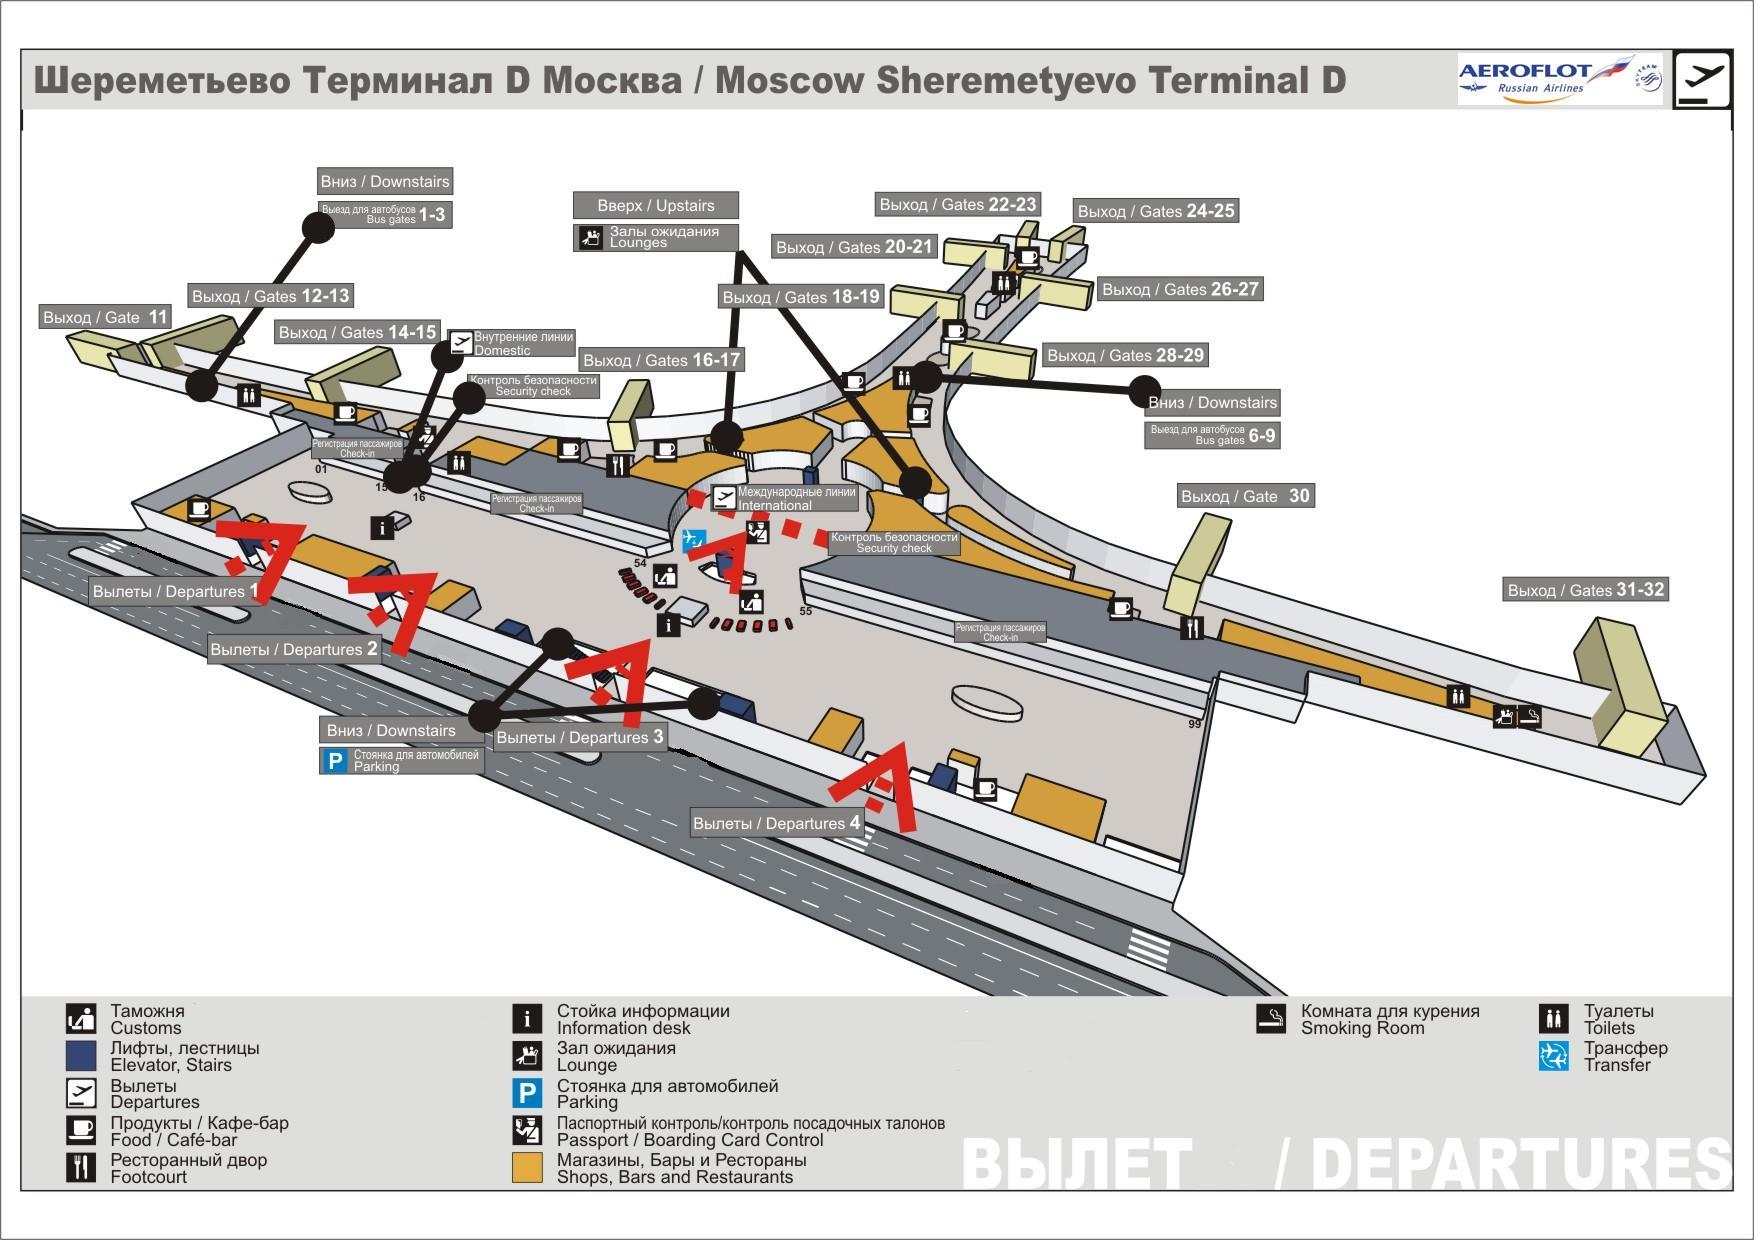 Аэропорт Шереметьево терминал 2